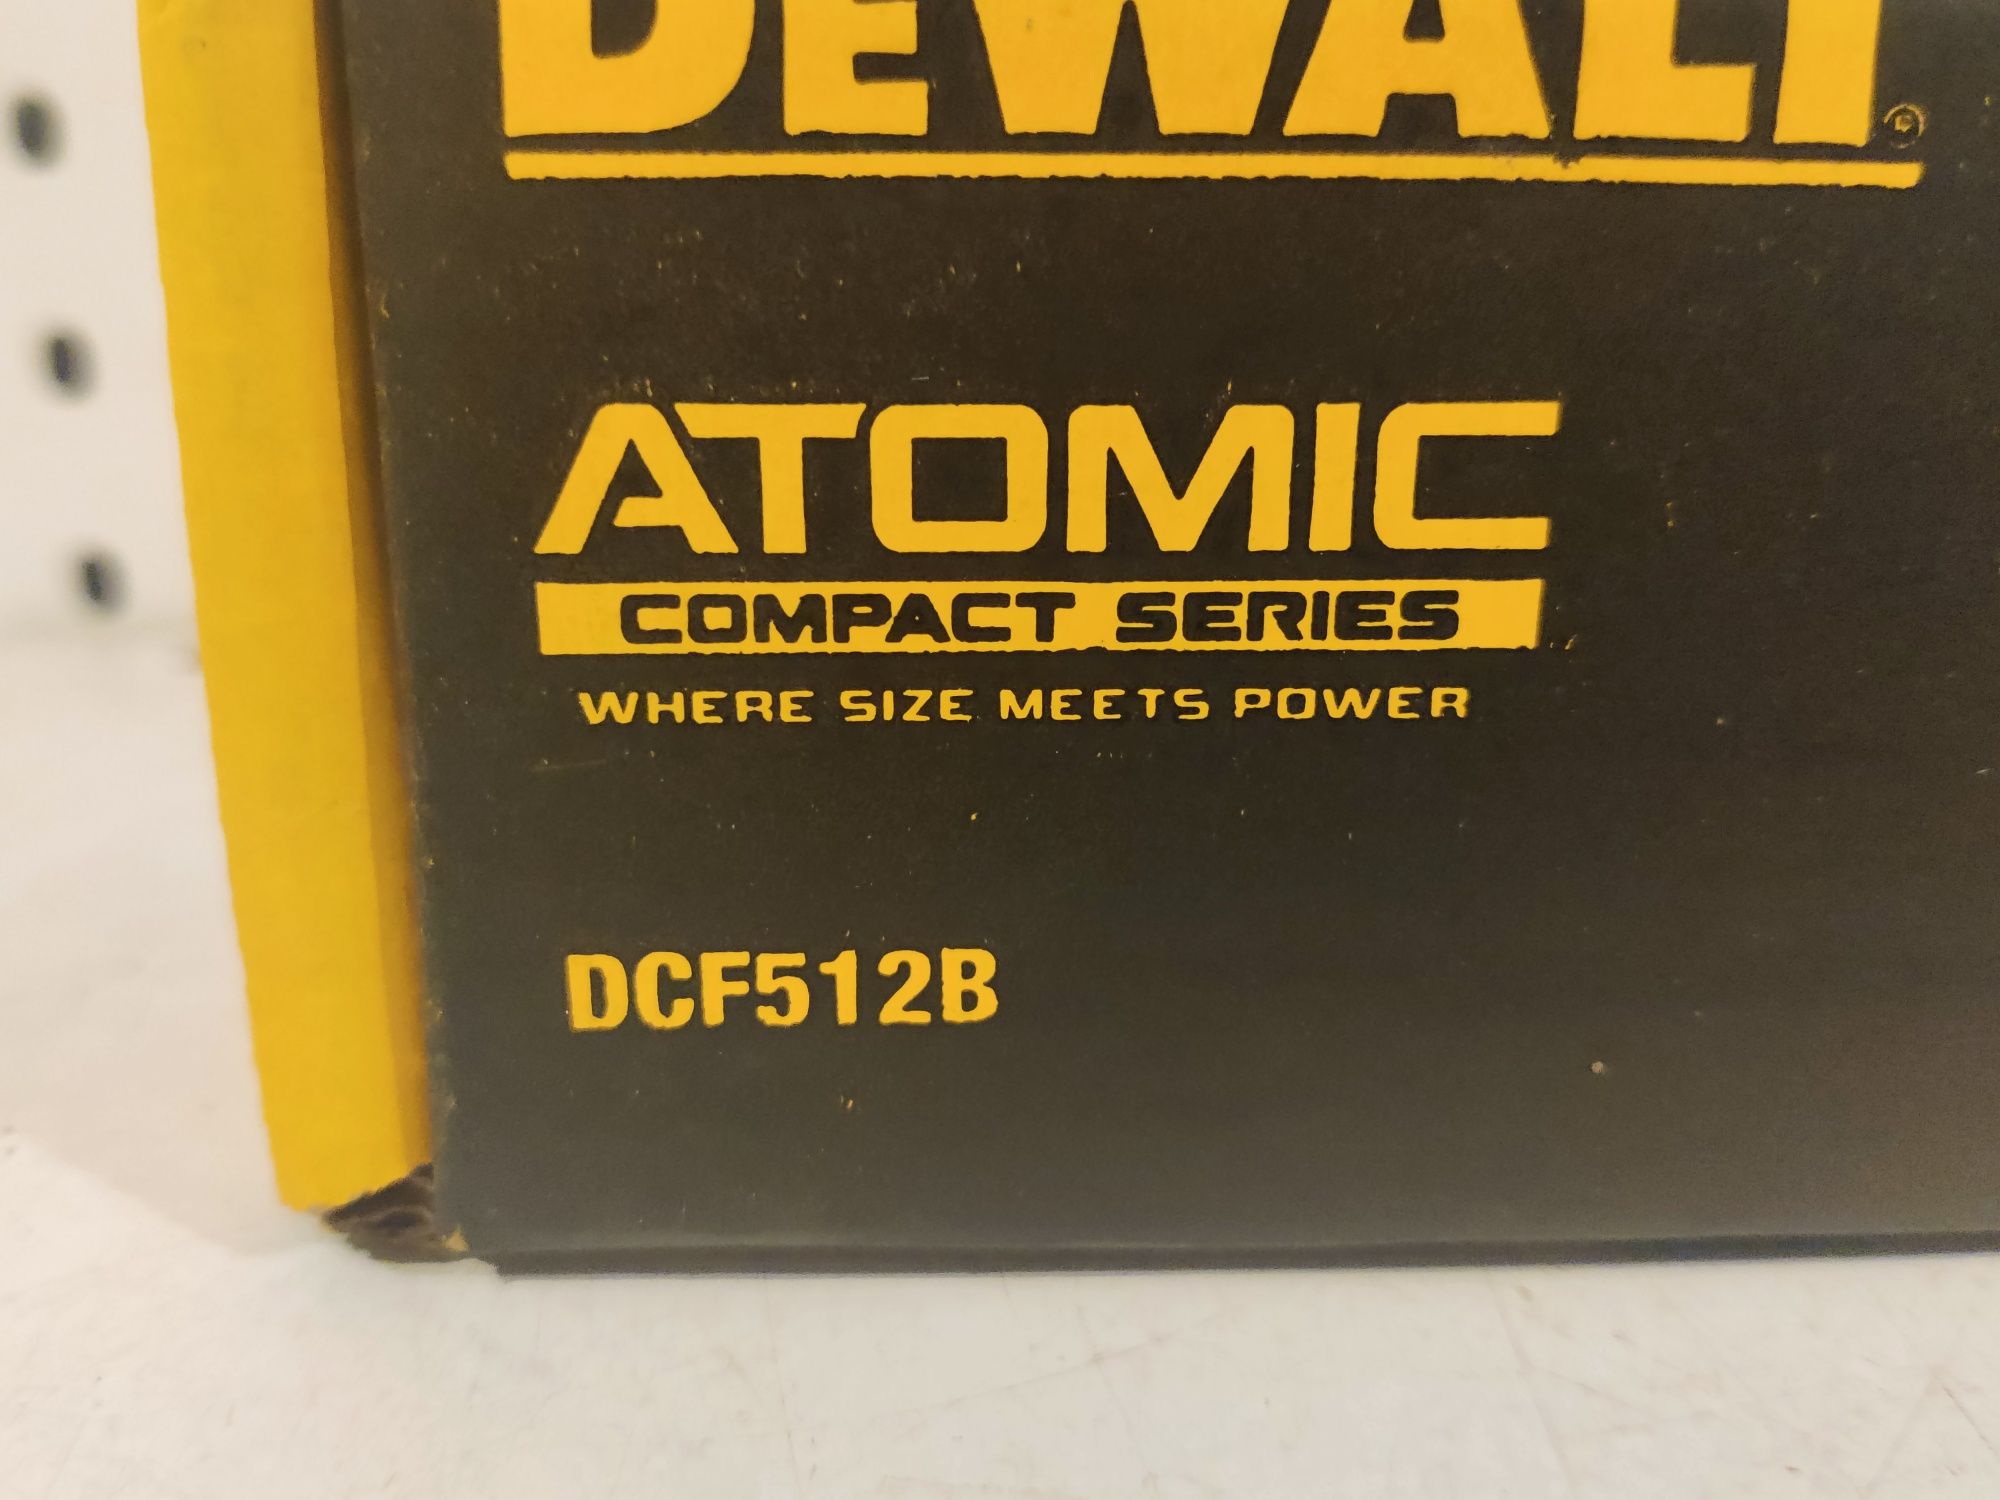 DeWalt DCF 512 20V Max Atomic угловой гайковерт 1/2" Оригинал США